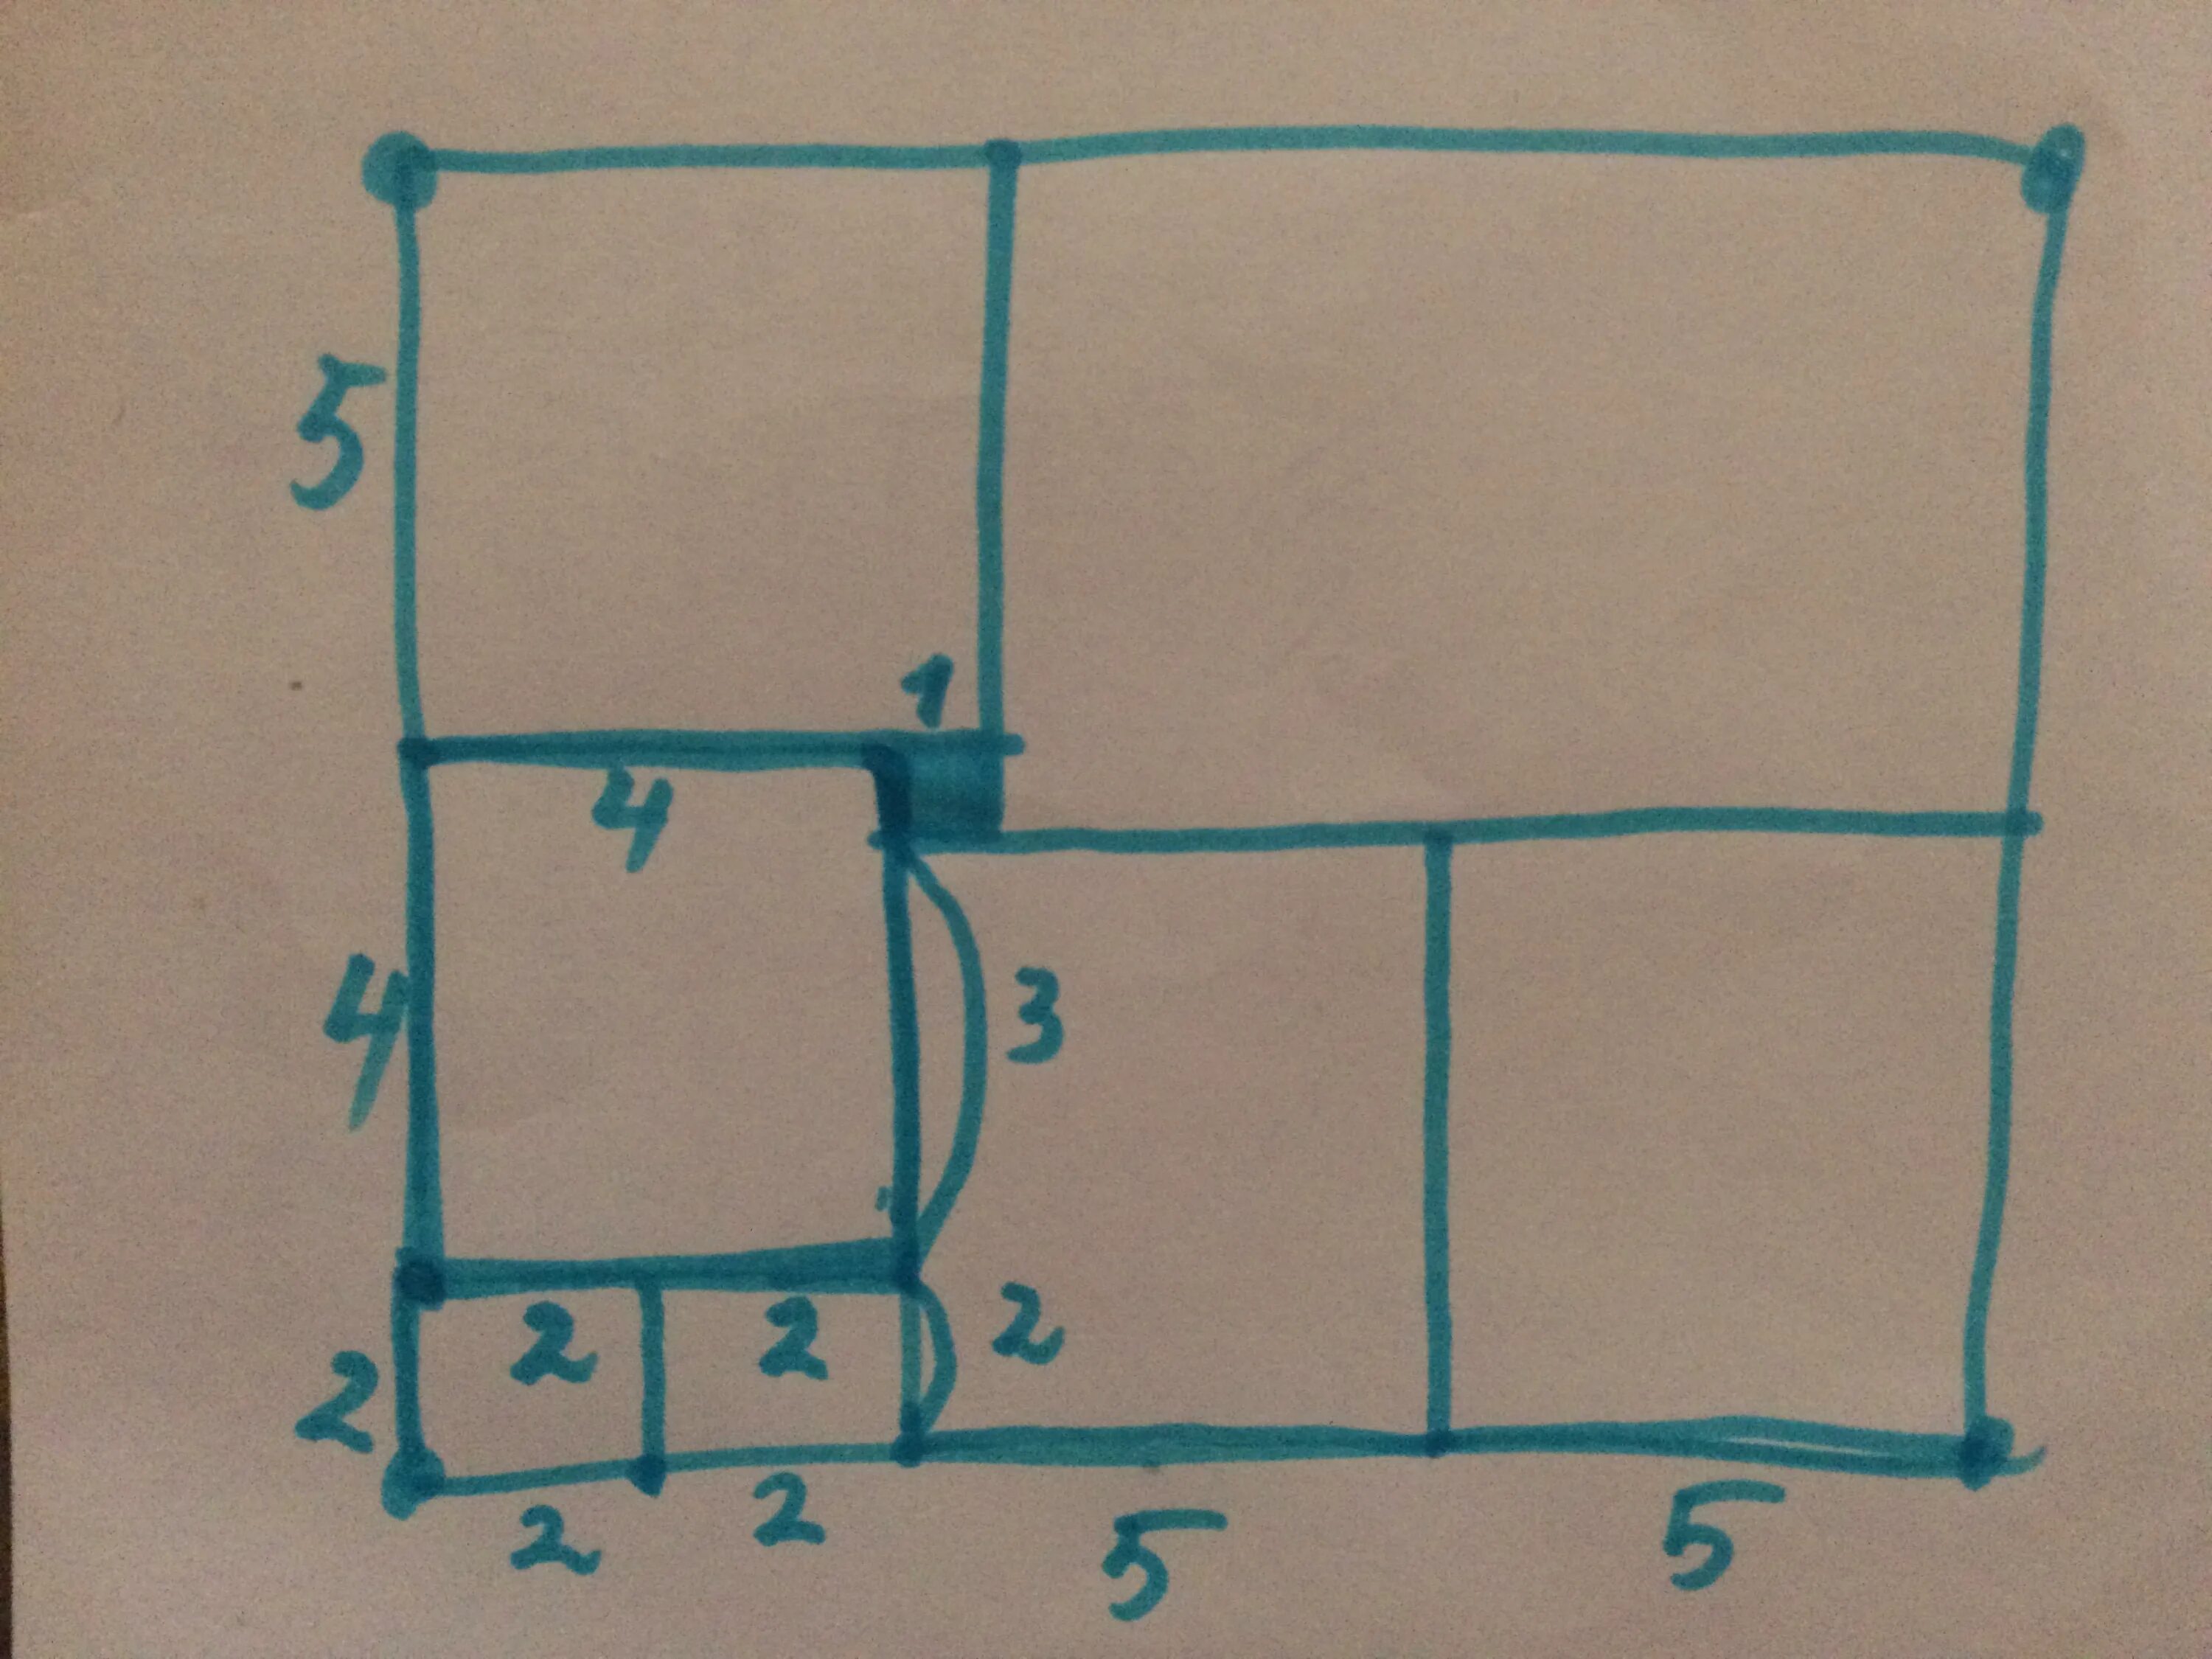 Квадрат на рисунке разбит на 11. Прямоугольник разбит на квадраты. Прямоугольник разбили на квадраты. Прямоугольник разбит на квадраты сторона закрашенного. Прямоугольник АБВГ разбит на квадраты 1 квадрат.